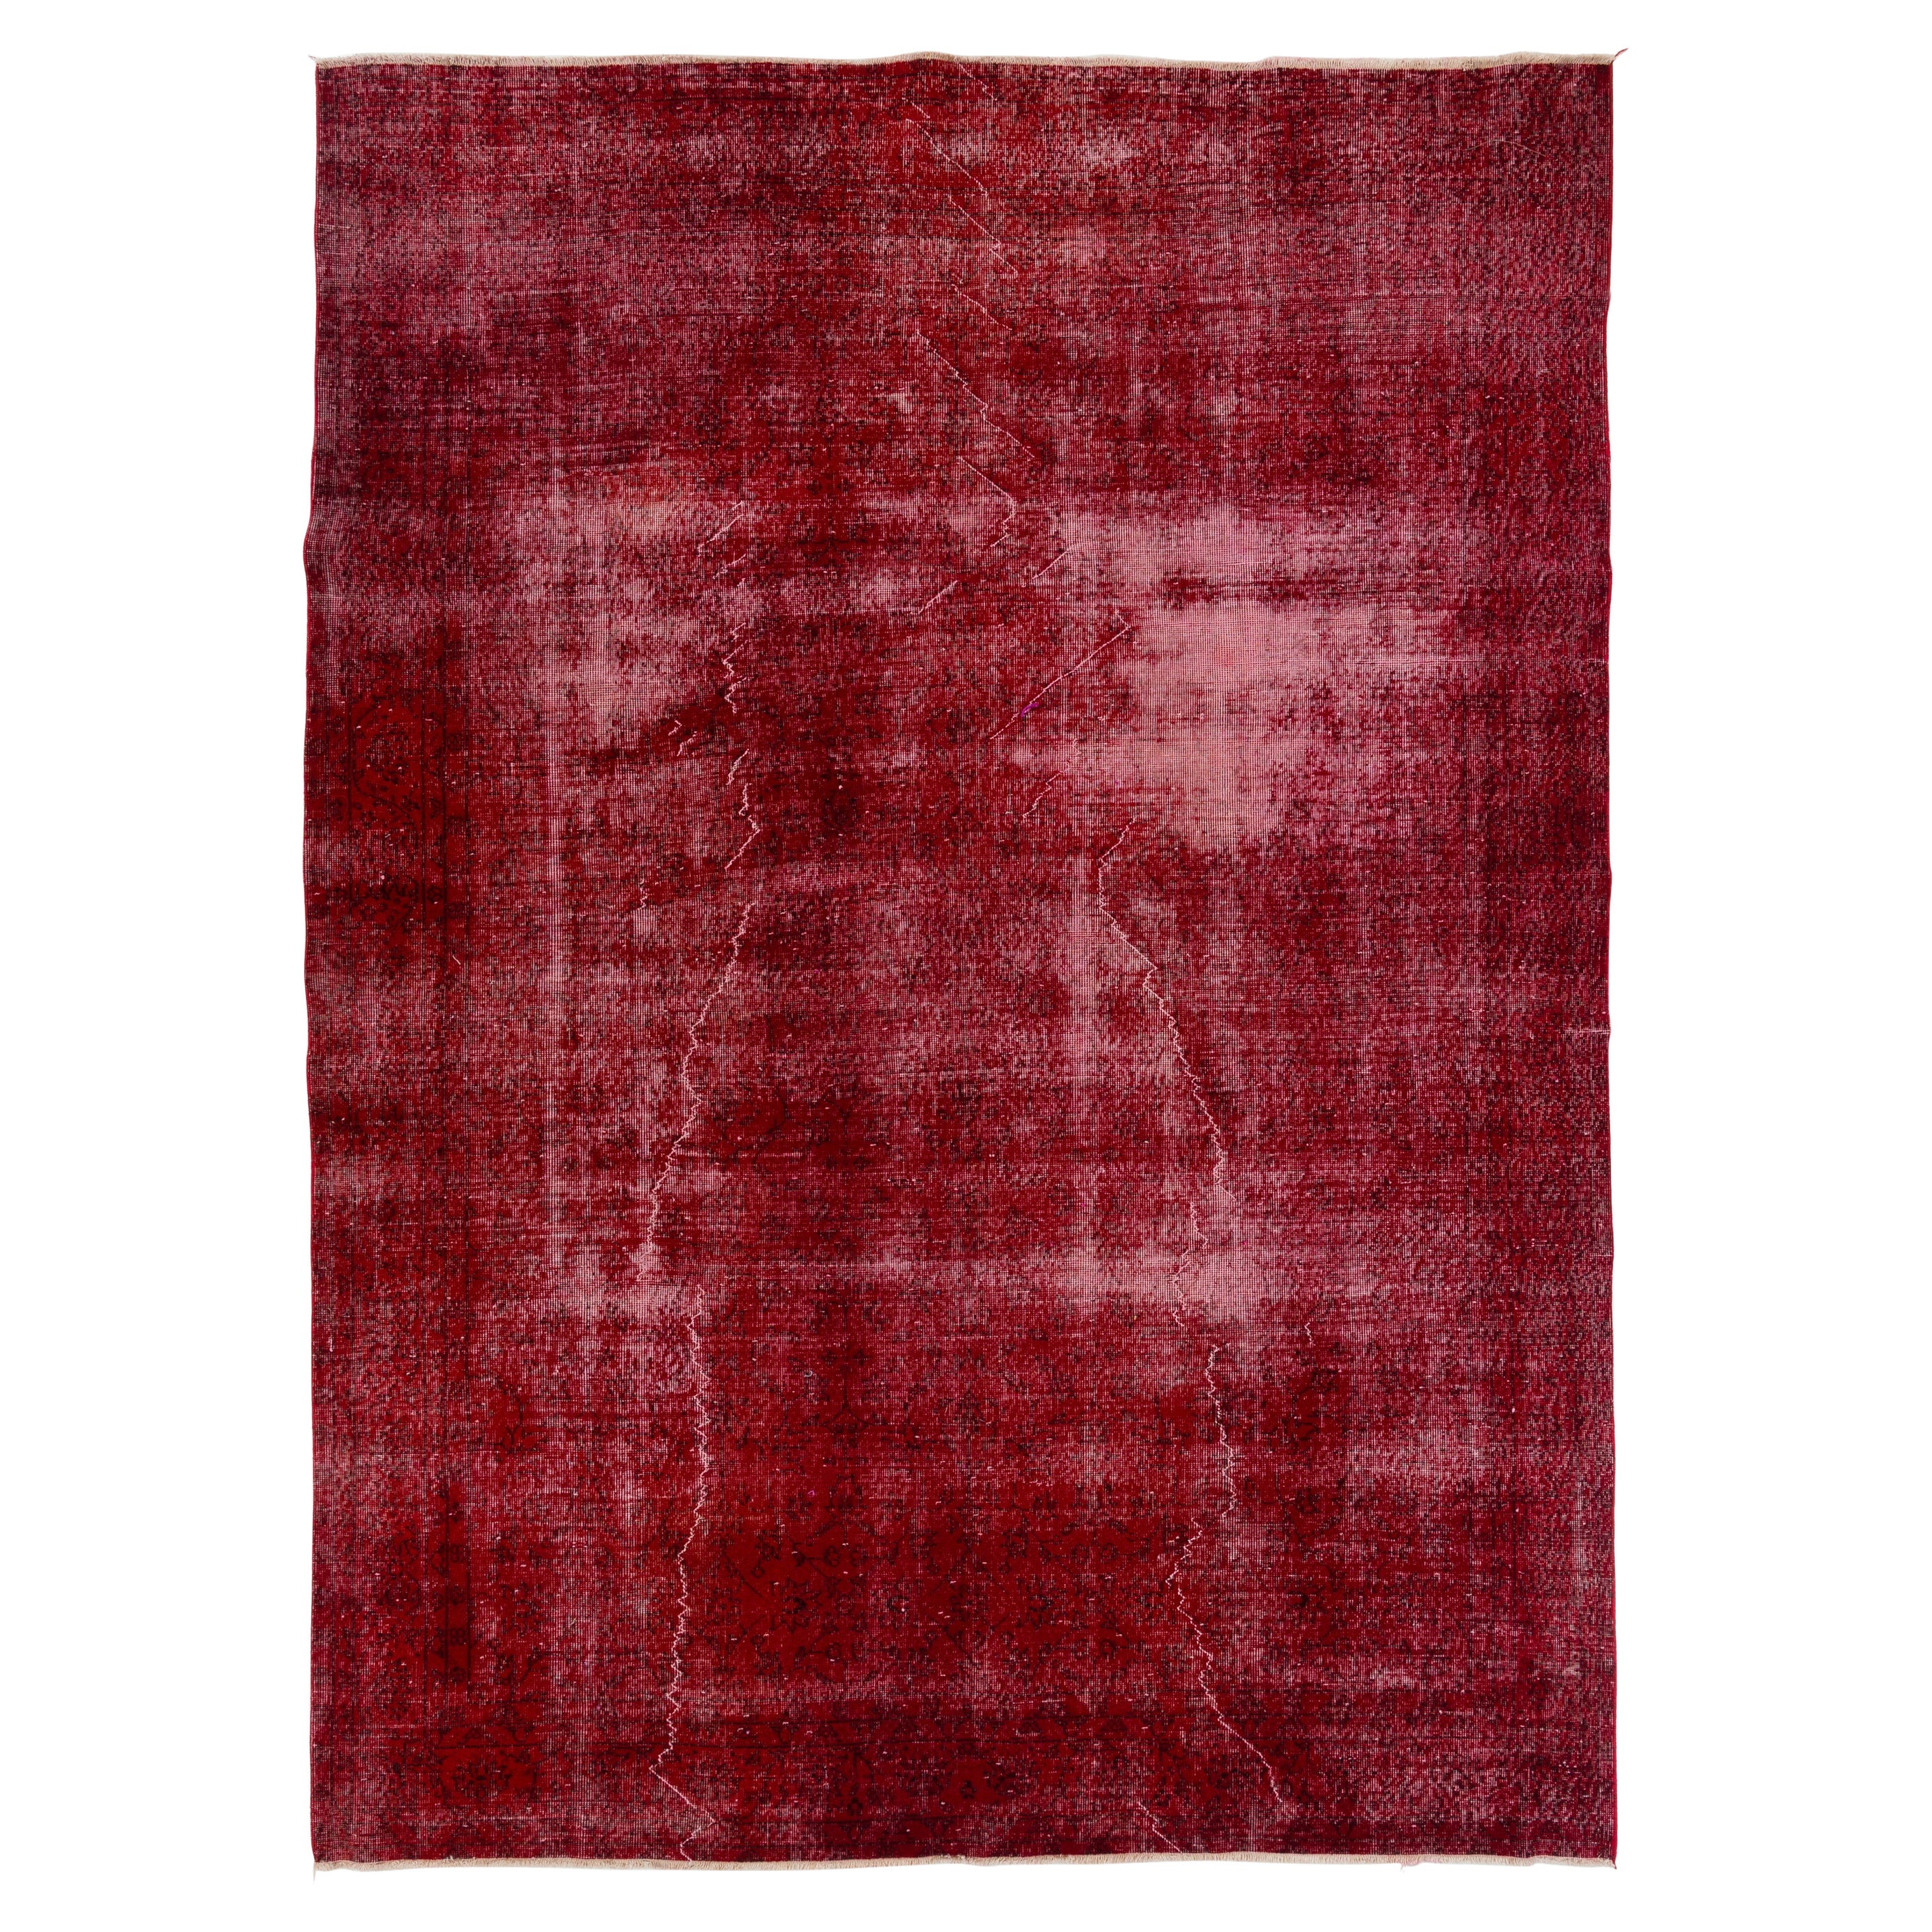 7.8x10.8 Ft Vintage Turkish Rug in Ruby Red, Distressed Handmade Wool Carpet